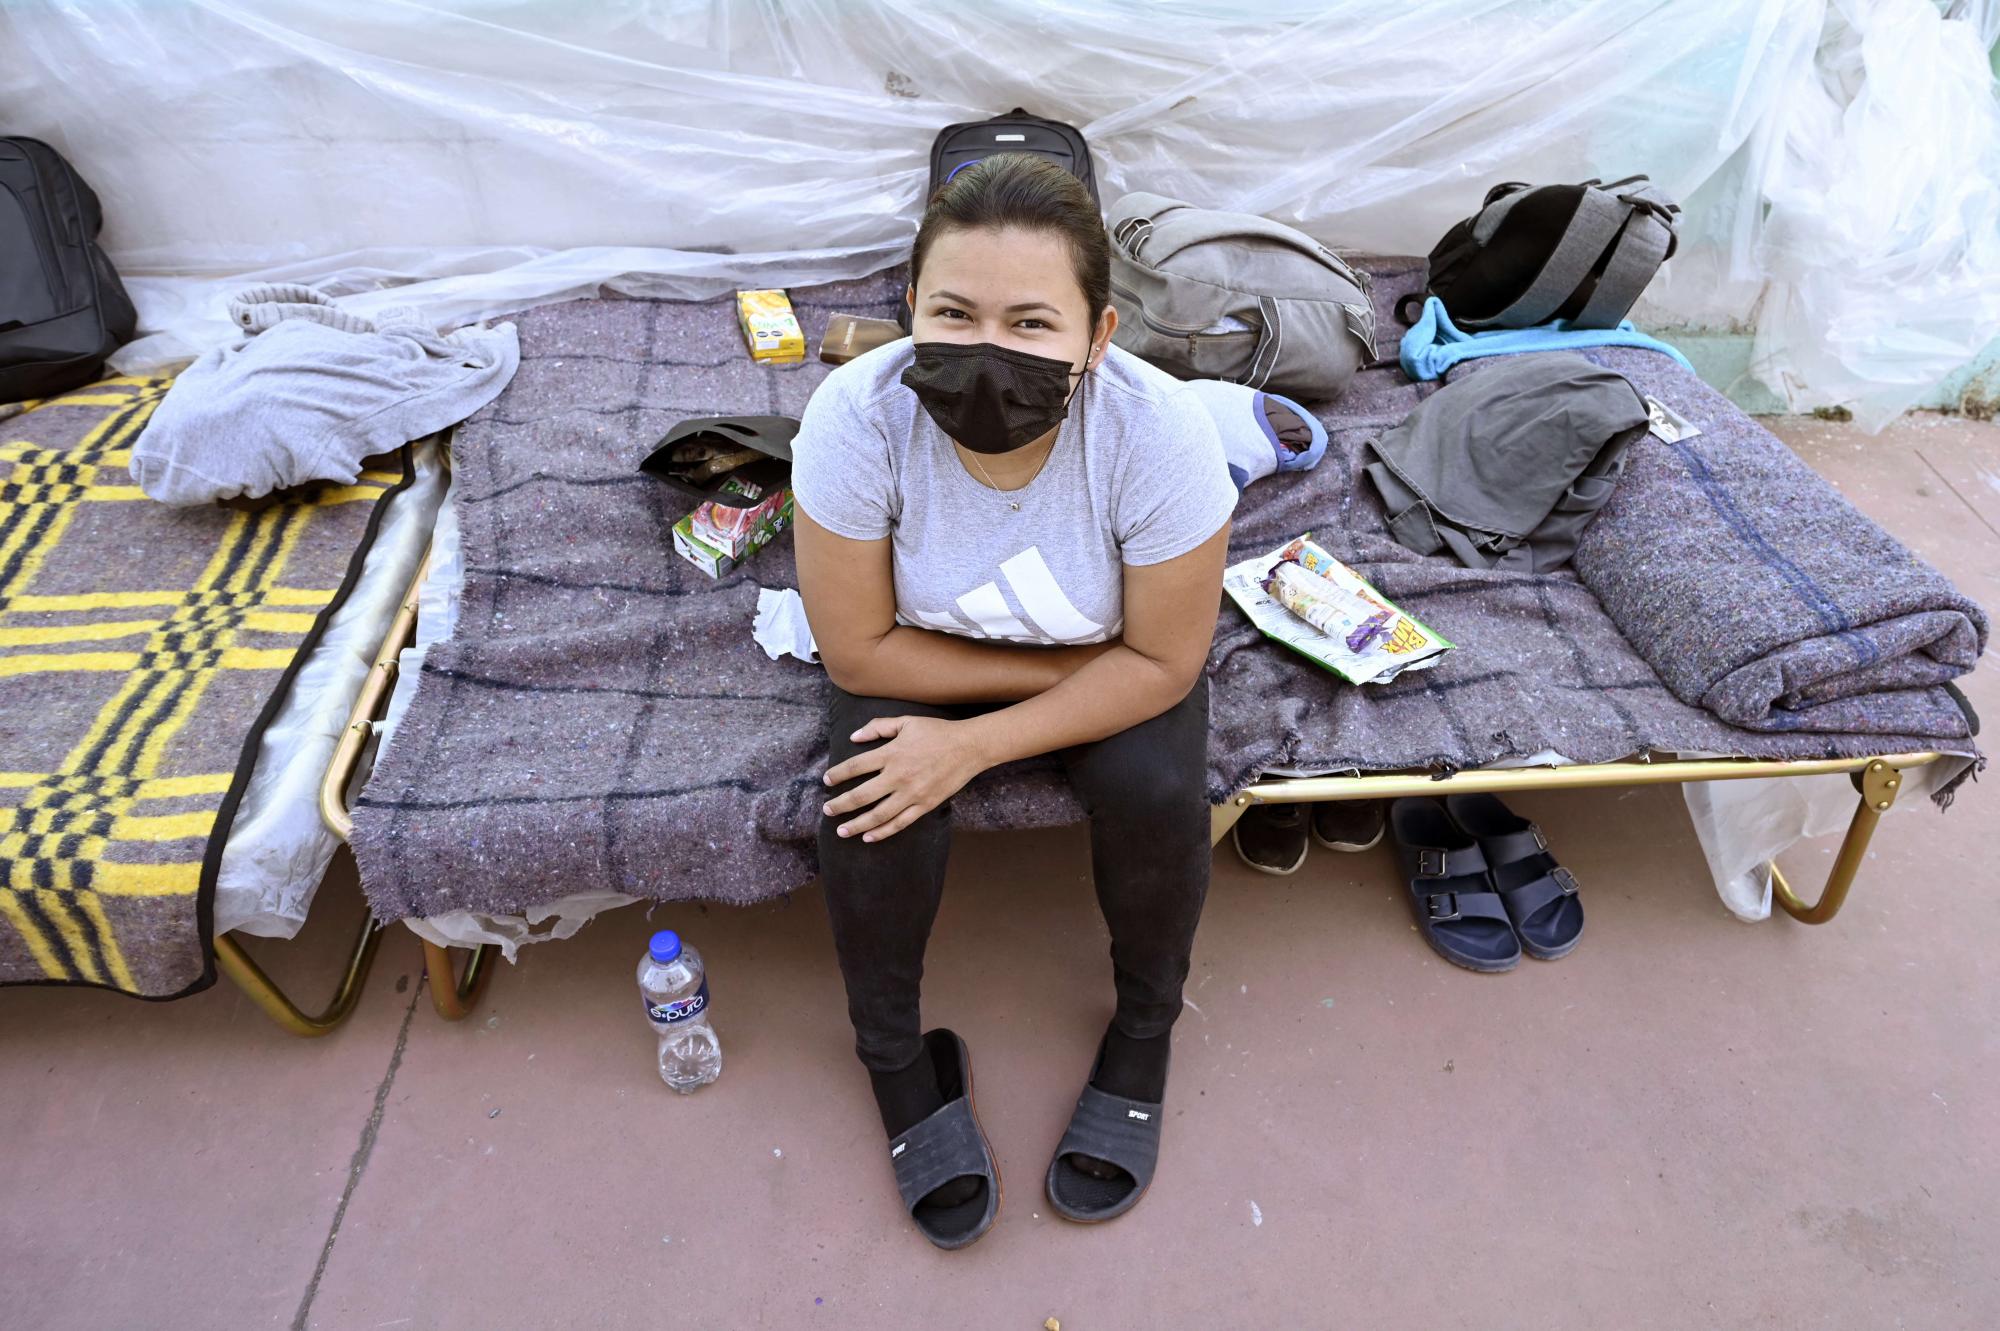 Las fotos muestran cómo viven migrantes en refugios de México